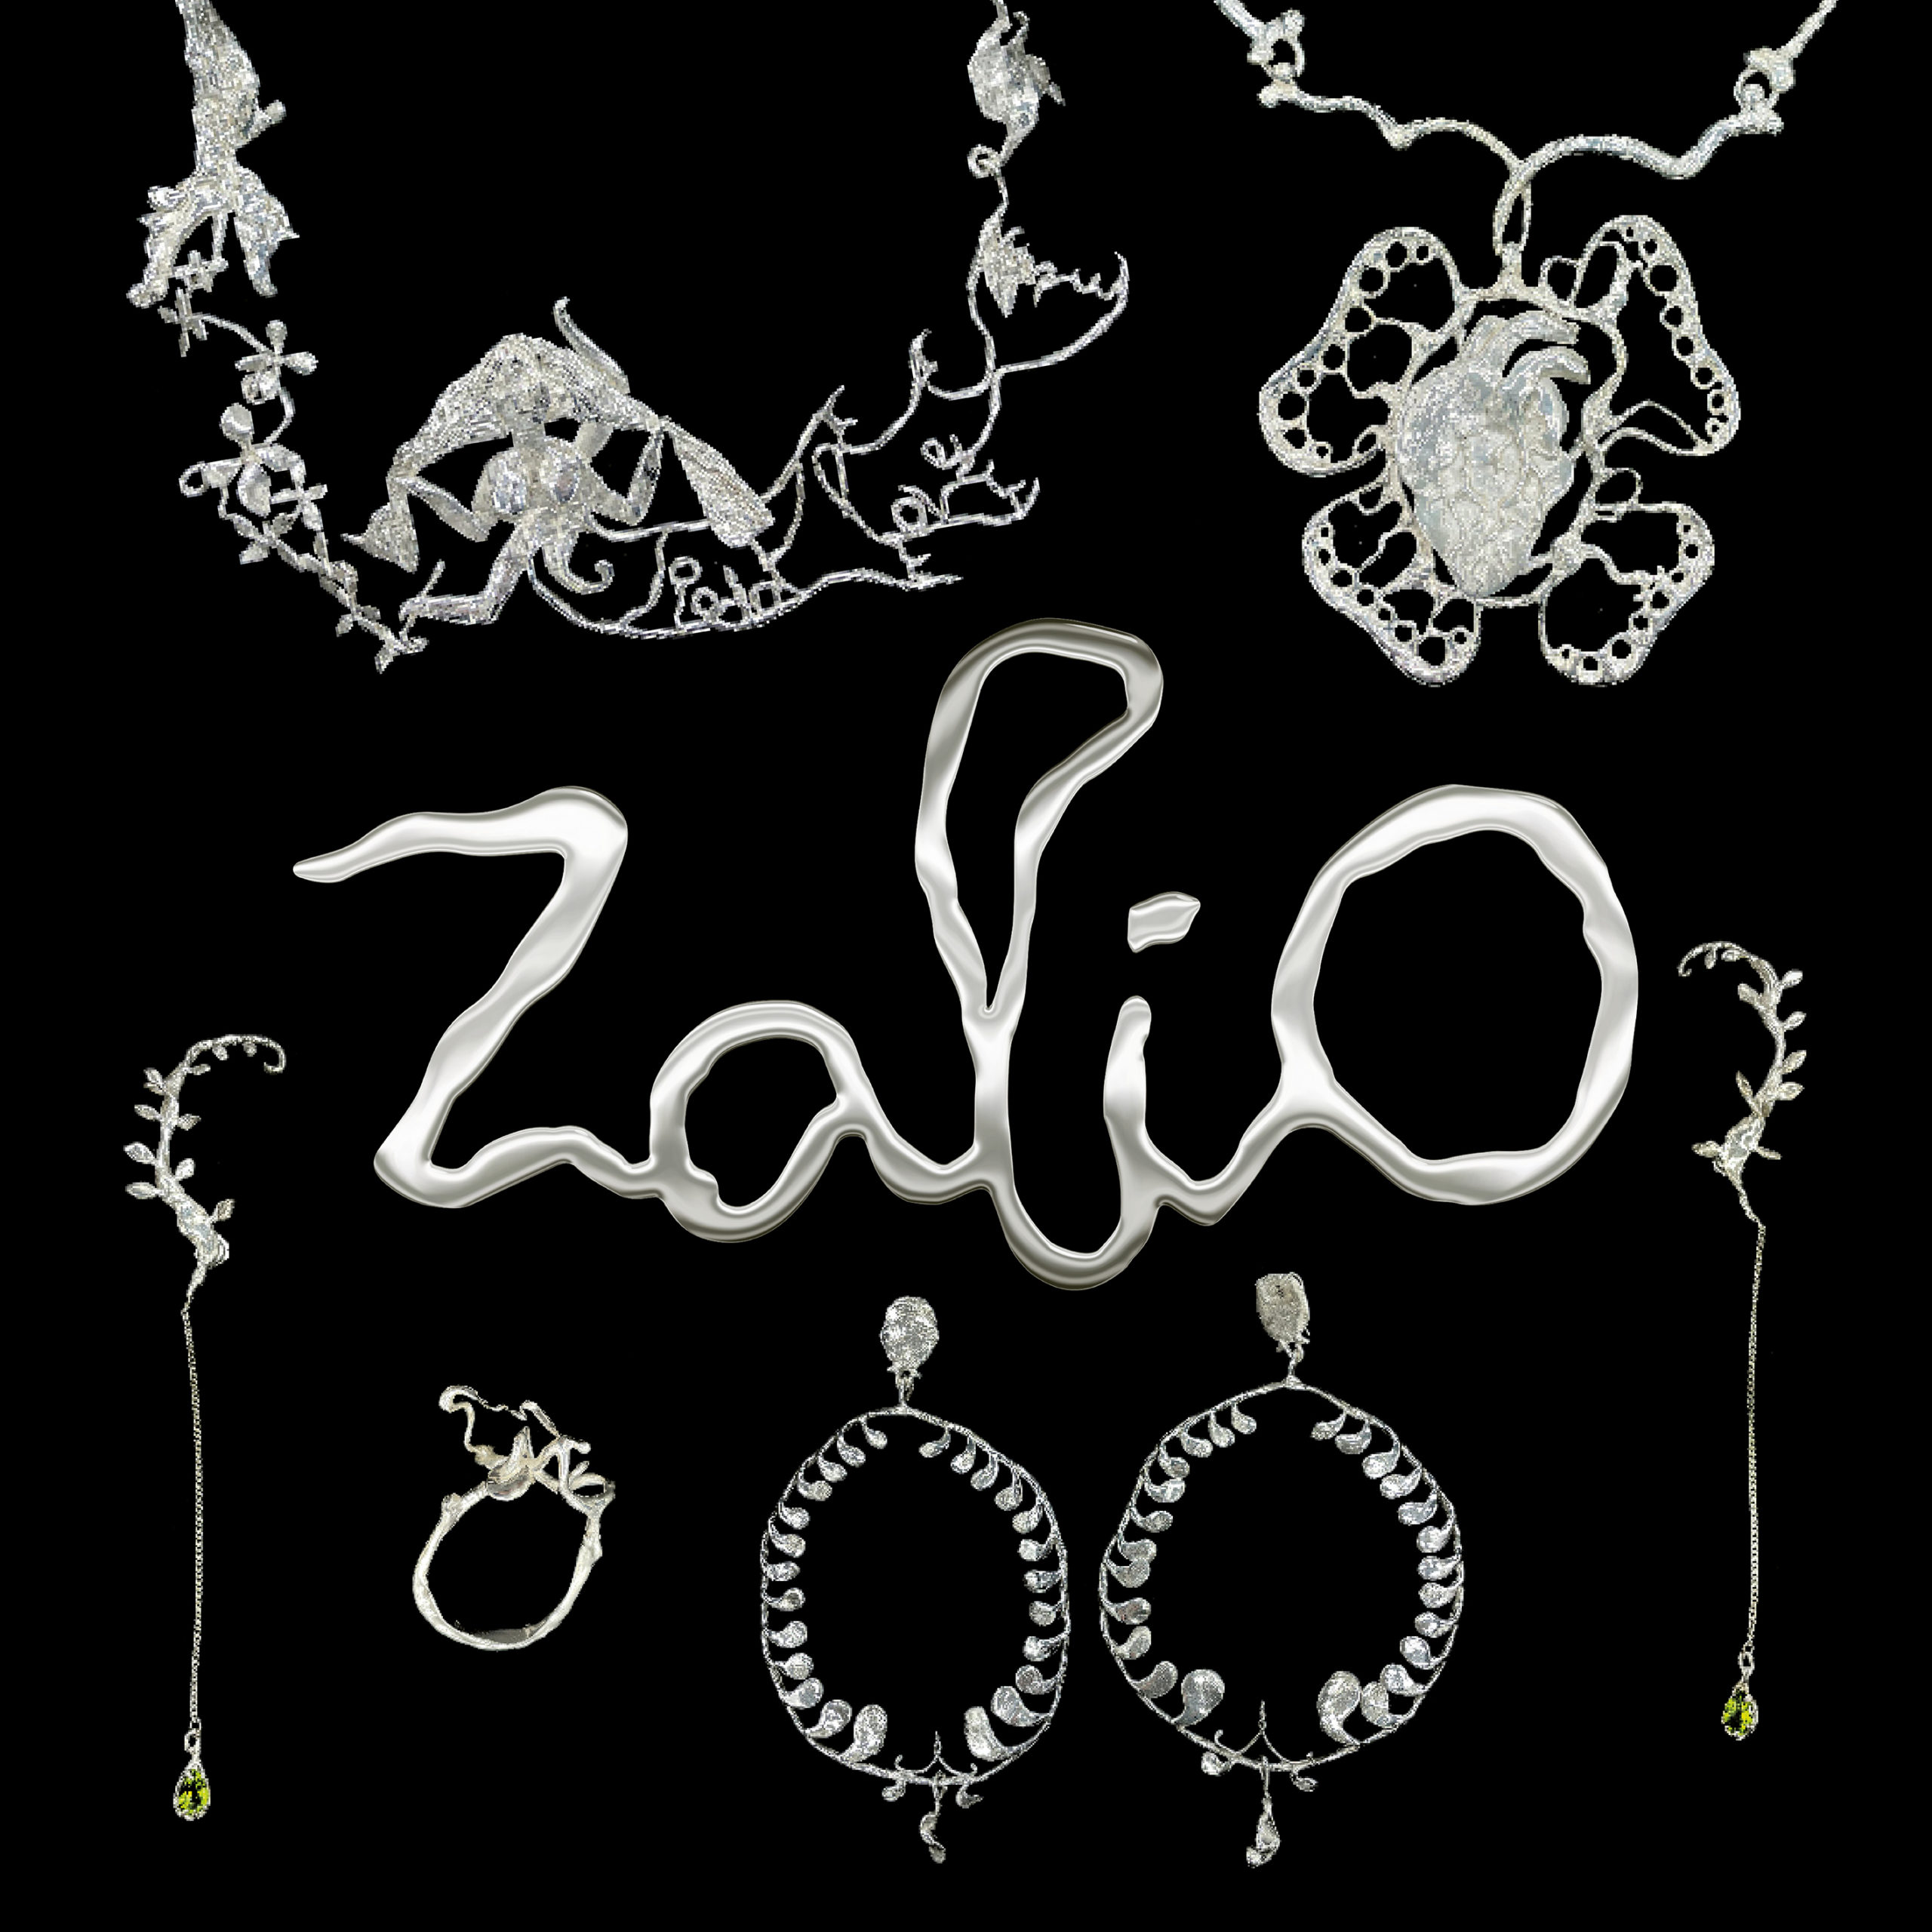 Zalio by Giuseppe Fió